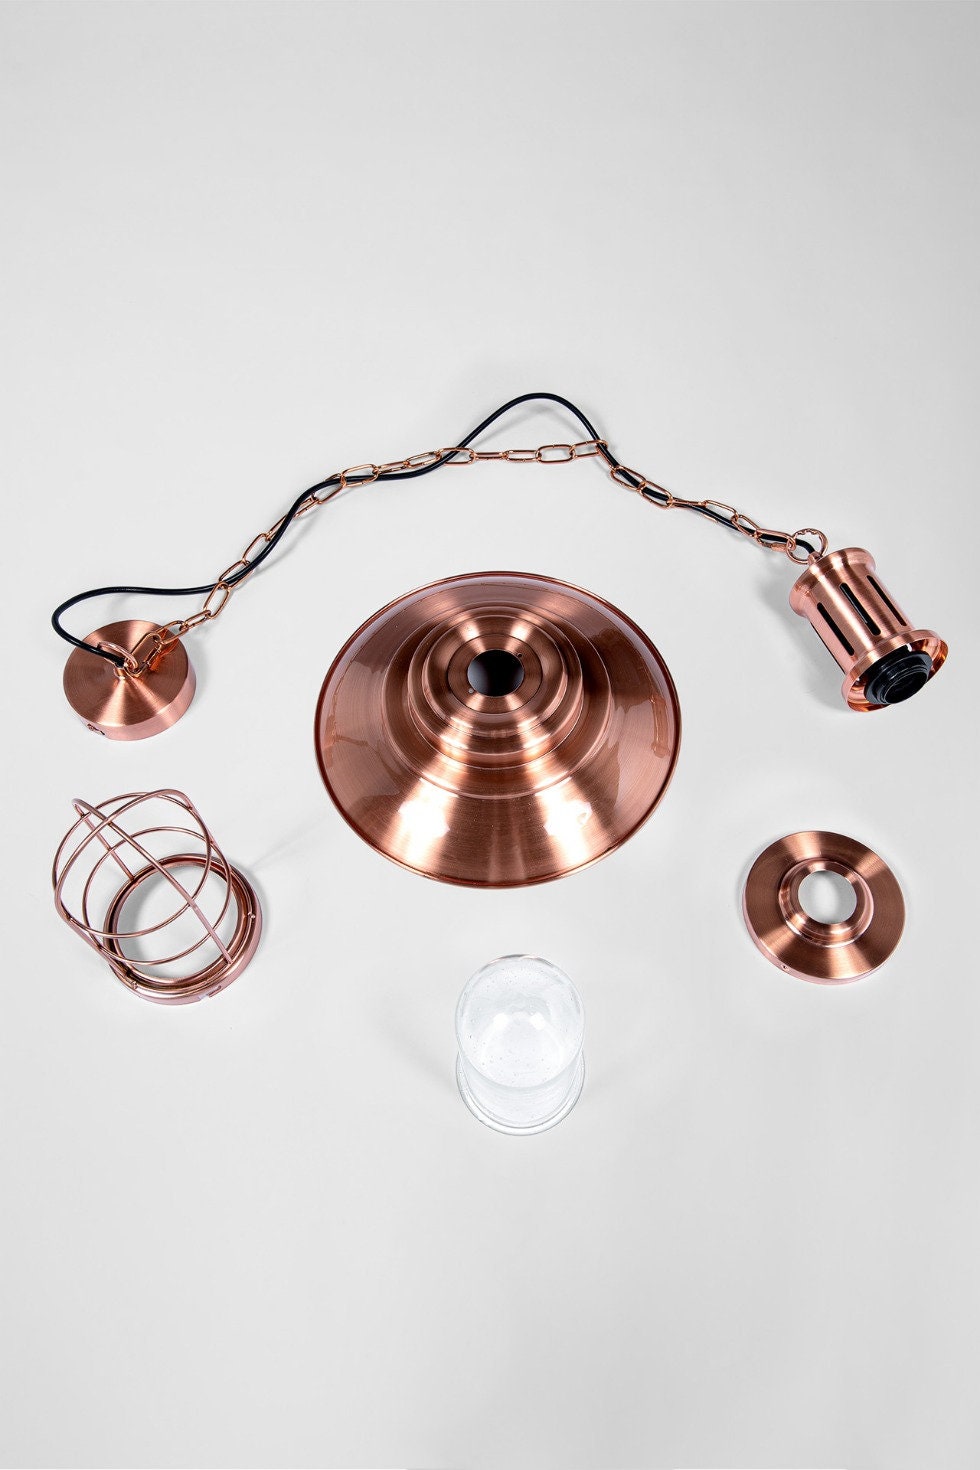 Mrs. Copper Satin – Retro Vintage Industrie Design Kupfer Hängelampe aus Metall